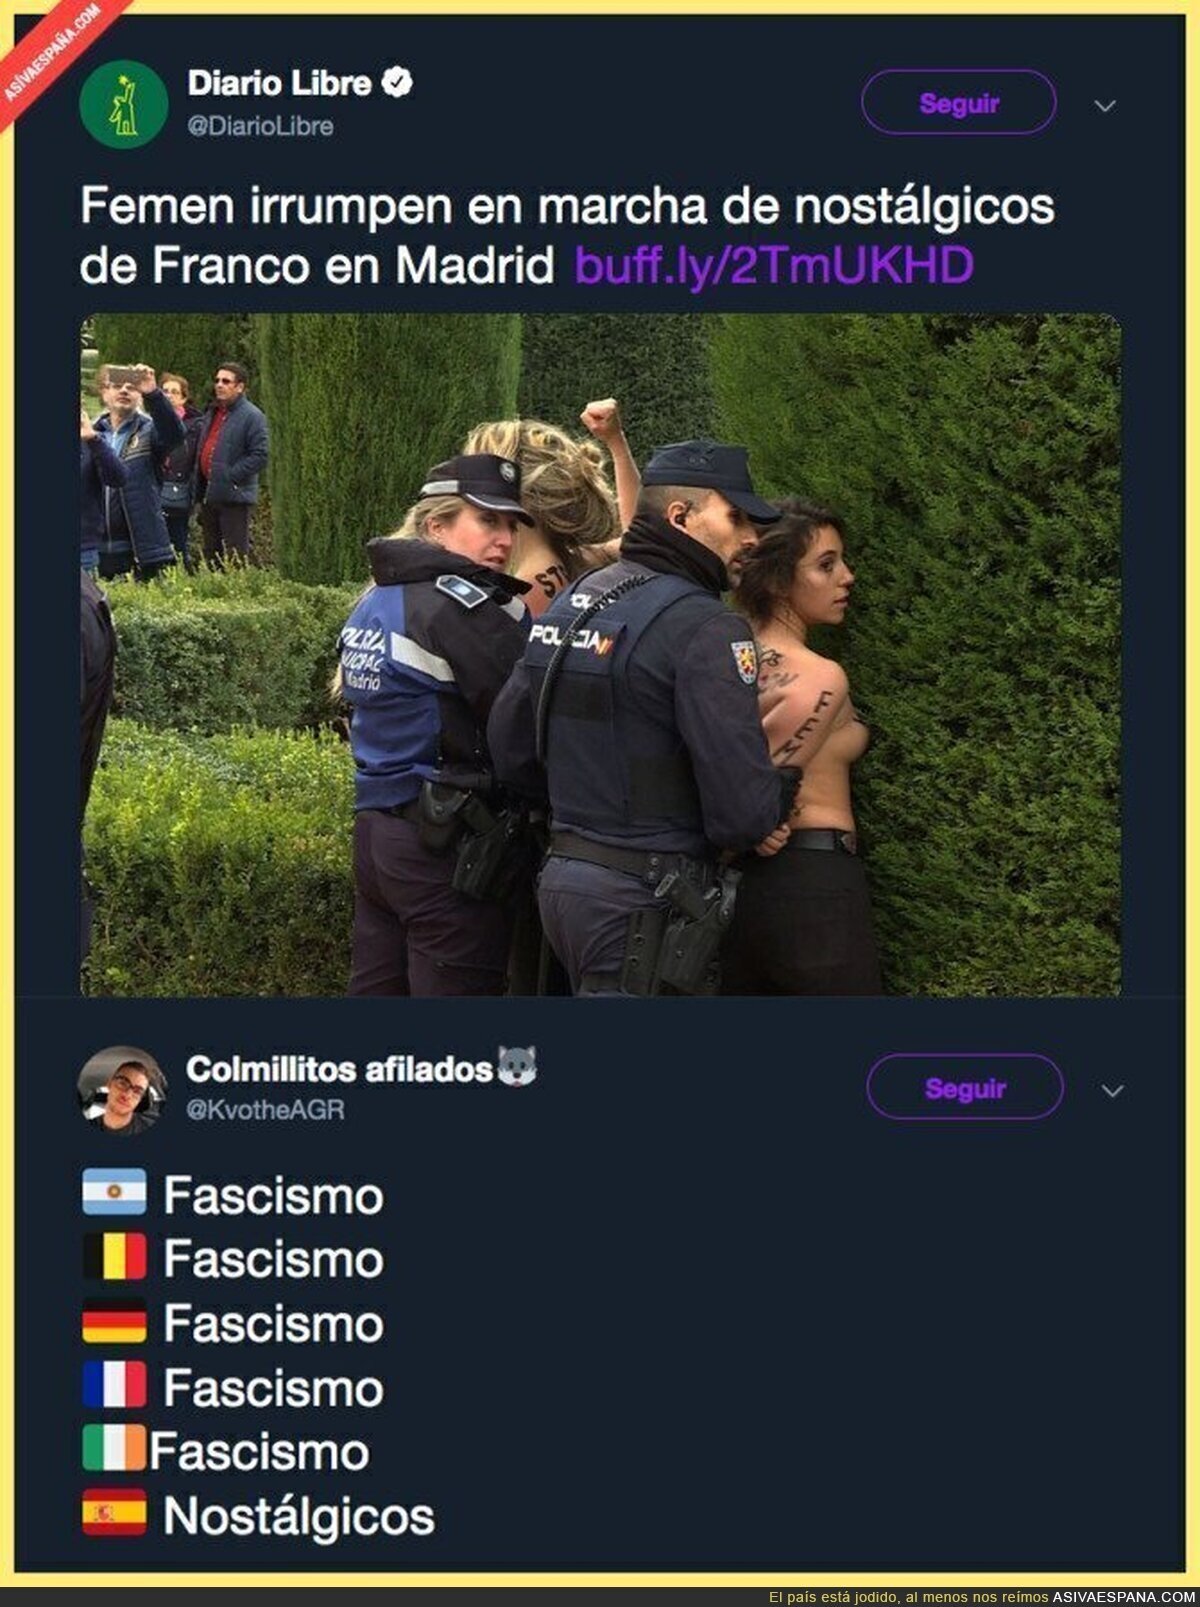 ¿Qué problema hay en los medios españoles que no se dice la palabra 'fascismo'?